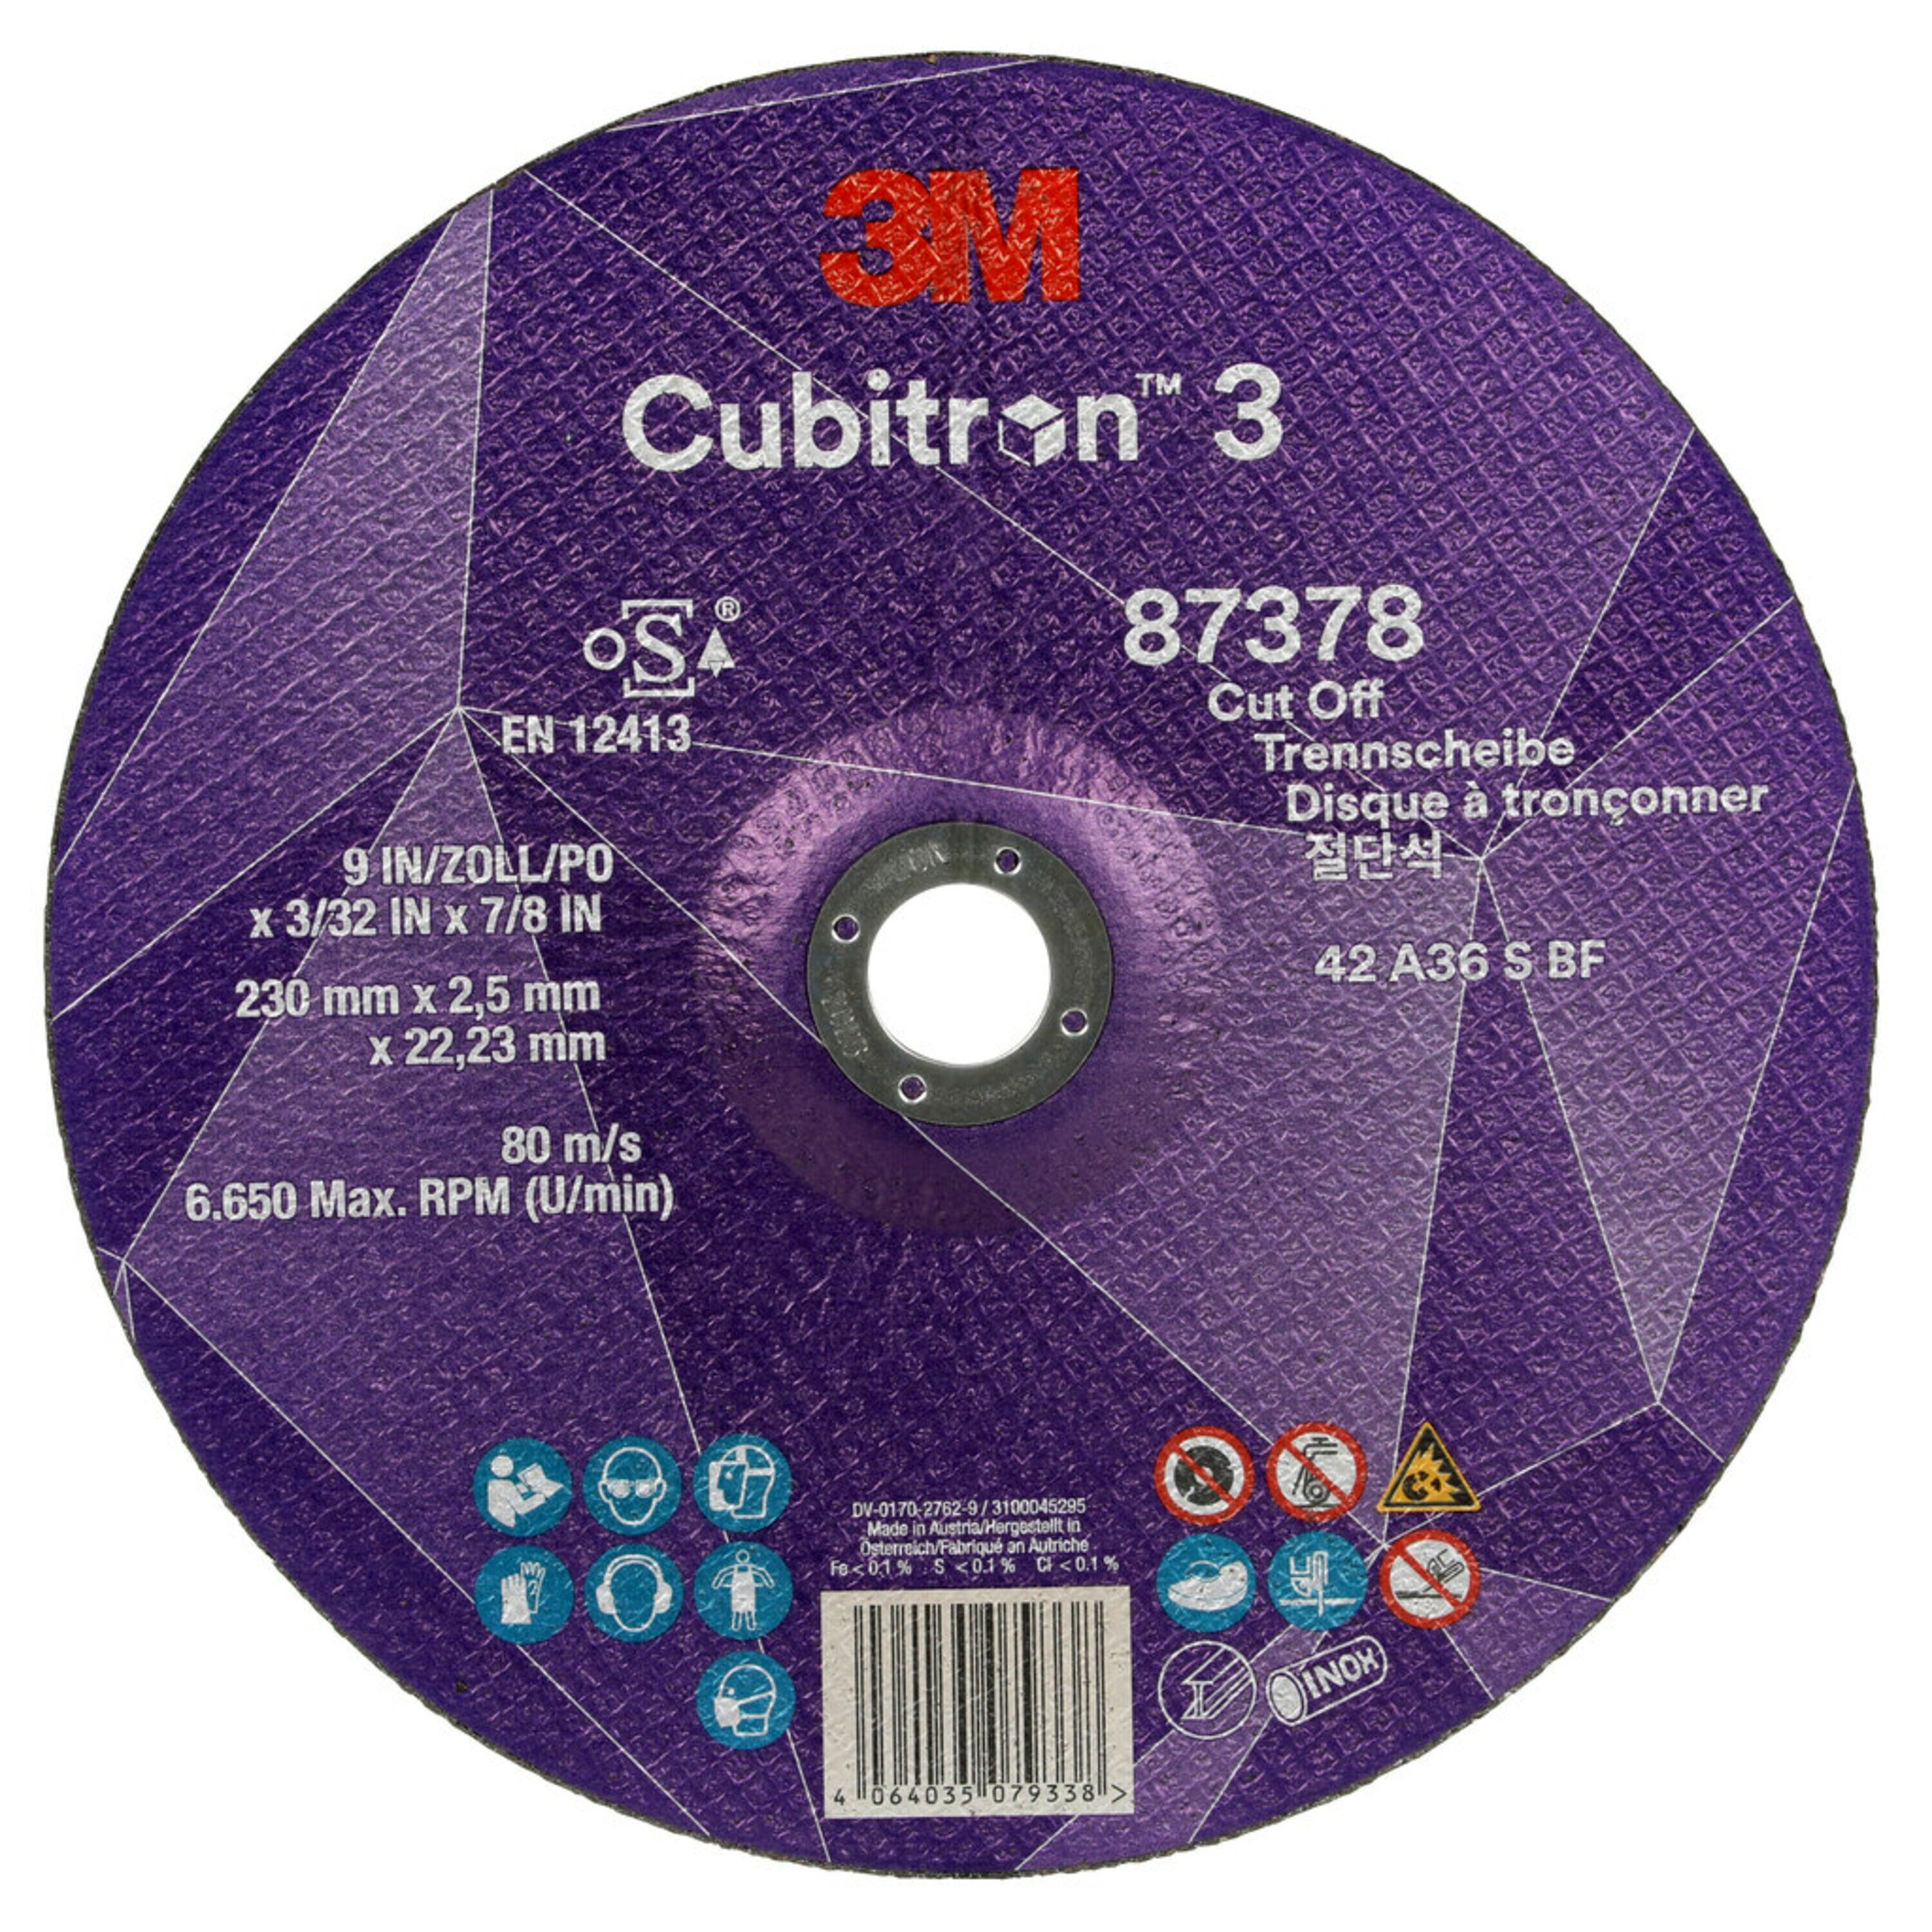 Disco de corte 3M Cubitron 3, 230 mm, 2,5 mm, 22,23 mm, 36 , tipo 42 #87378